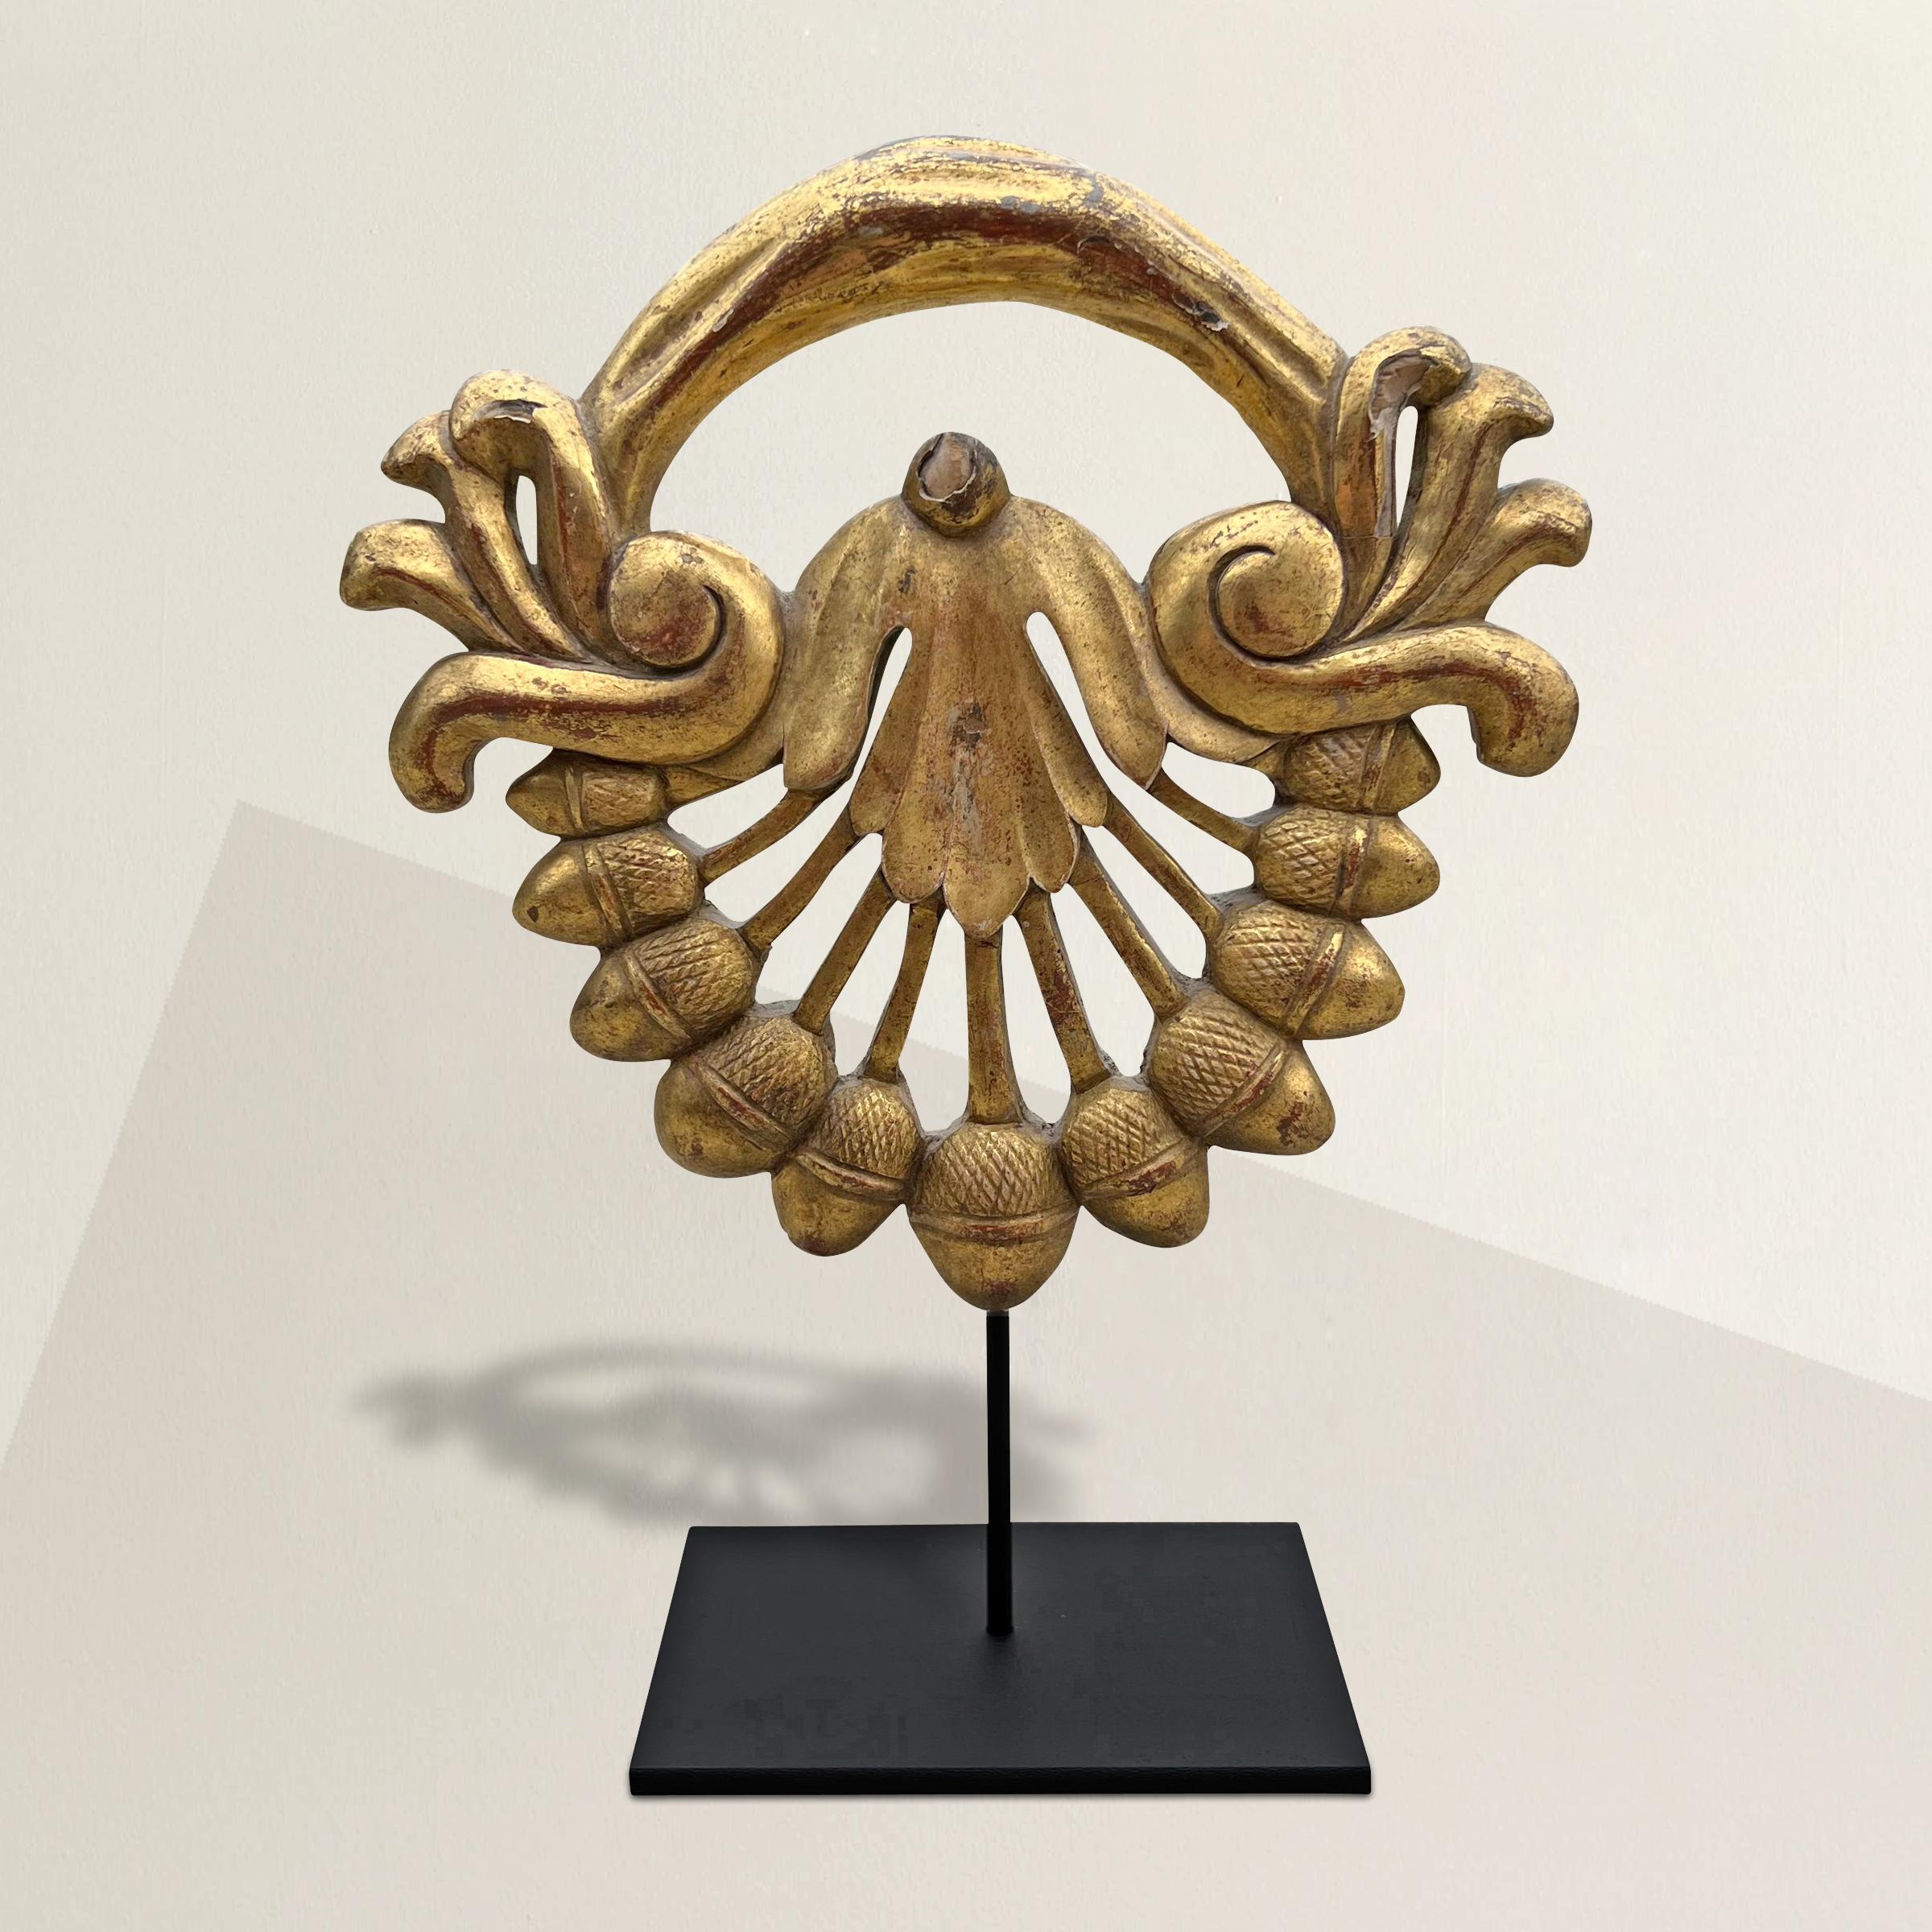 Ce fragment de cartouche fantaisiste du XIXe siècle, sculpté à la main et doré, est orné de glands et de feuillages. Il est monté sur une monture en acier personnalisée. Depuis l'Antiquité romaine, les glands symbolisent la force, la prospérité et